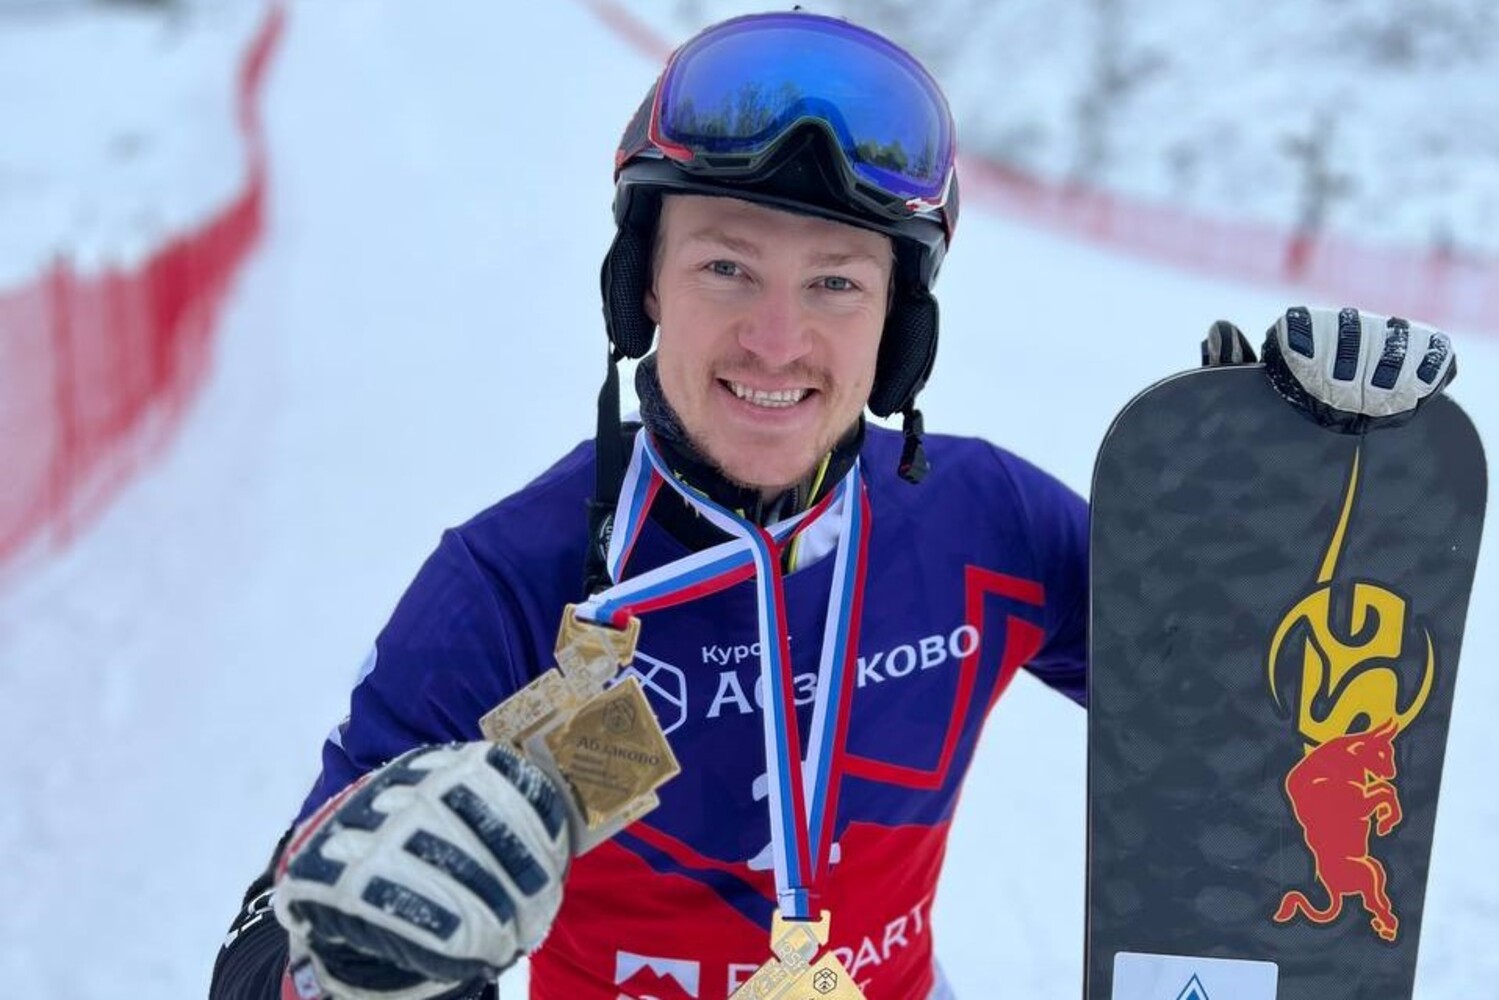 Выступающий при поддержке Стройсервиса российский сноубордист Дмитрий Логинов завоевал два золота на международных соревнованиях. Стройсервис